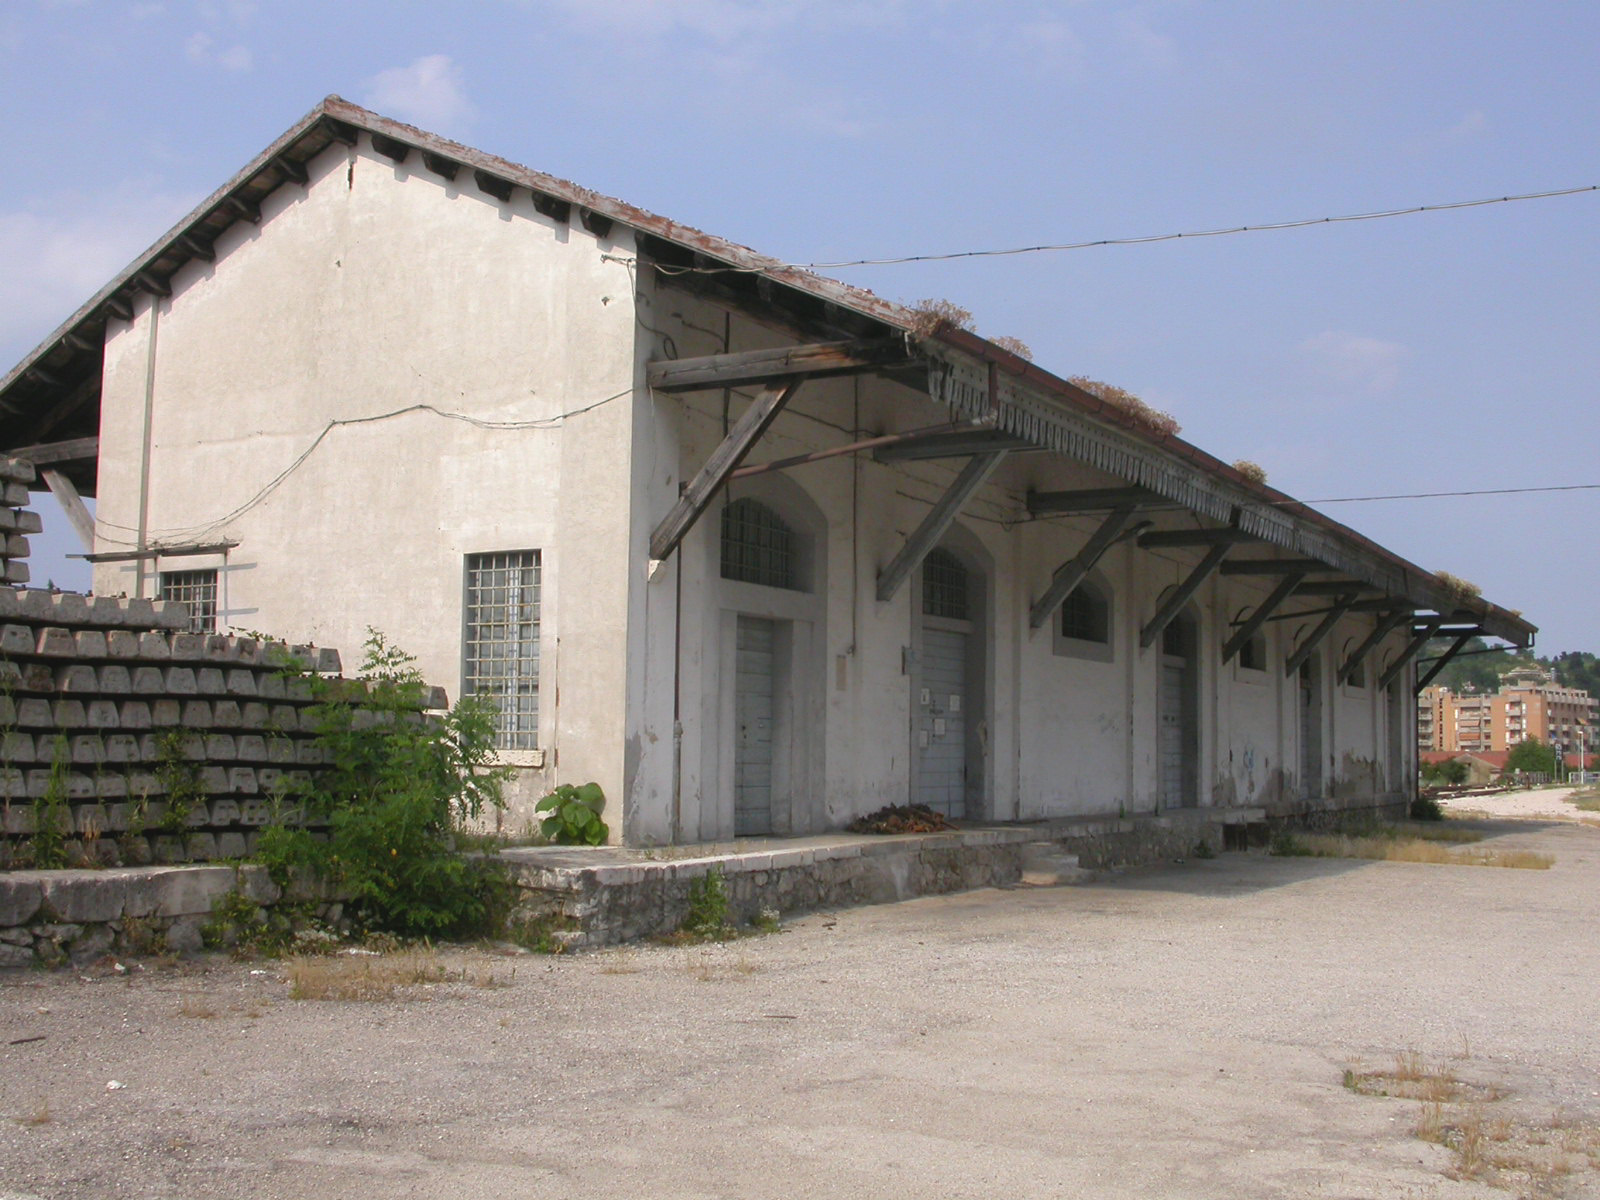 Magazzino ferroviario (magazzino, ferroviario) - Ascoli Piceno (AP) 